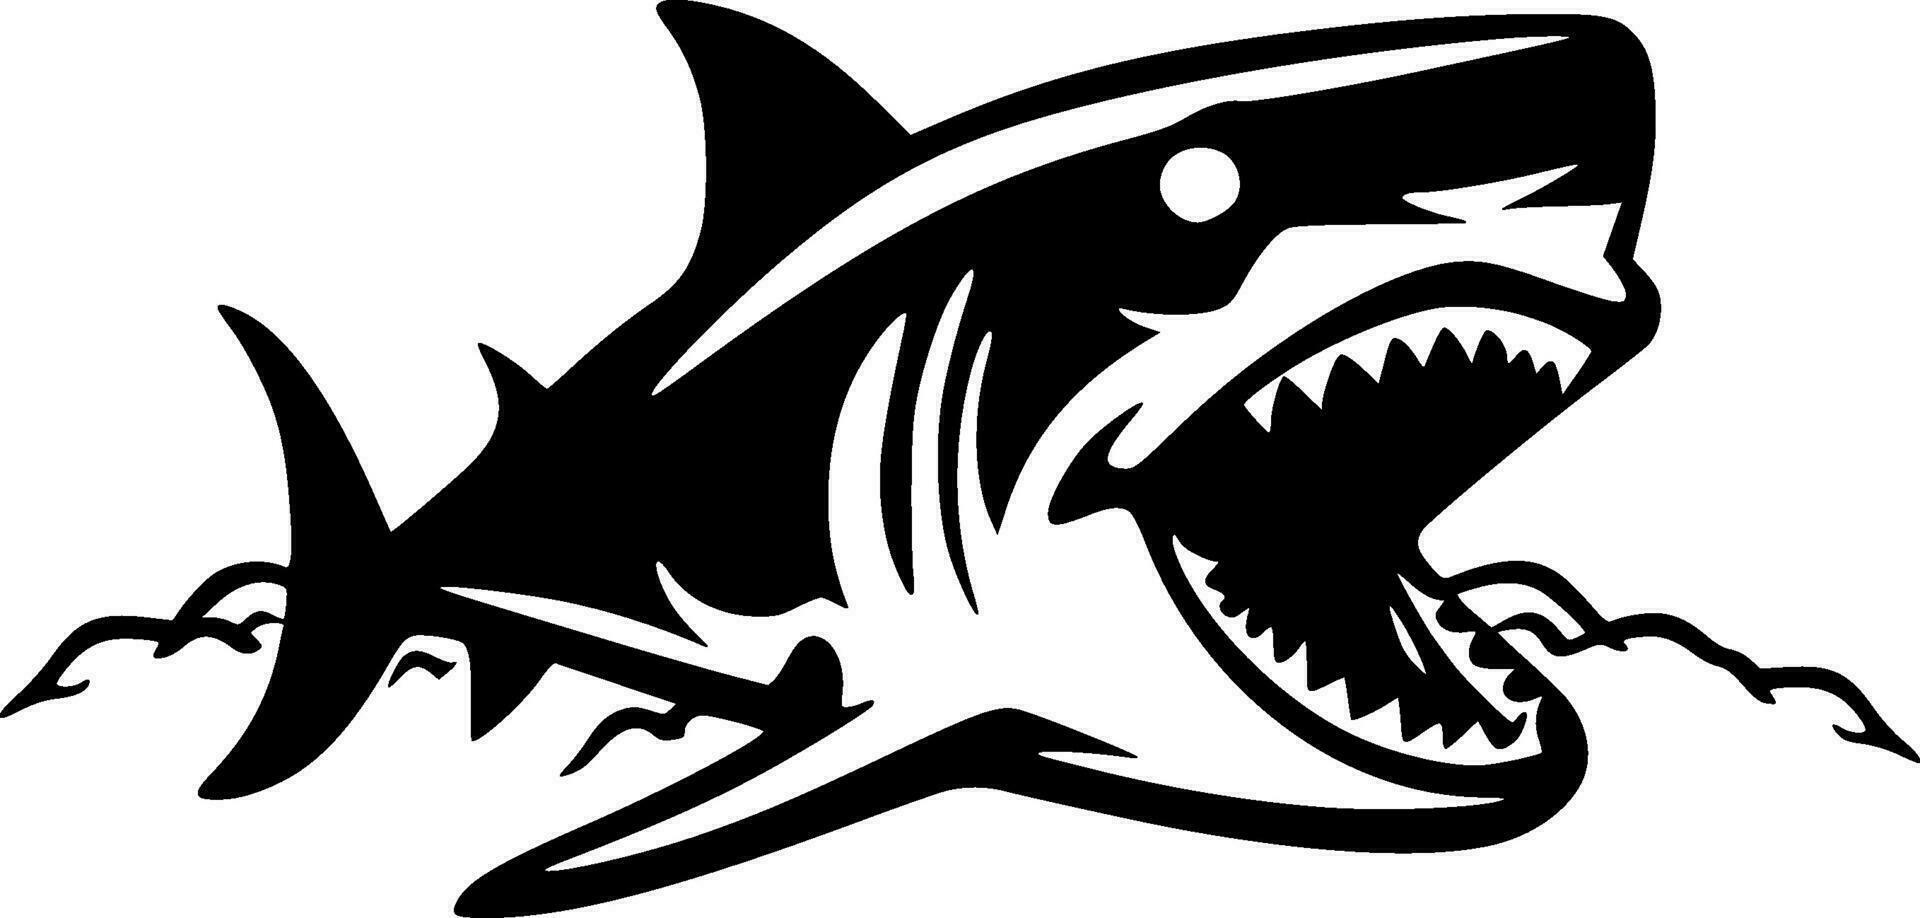 haai, zwart en wit vector illustratie